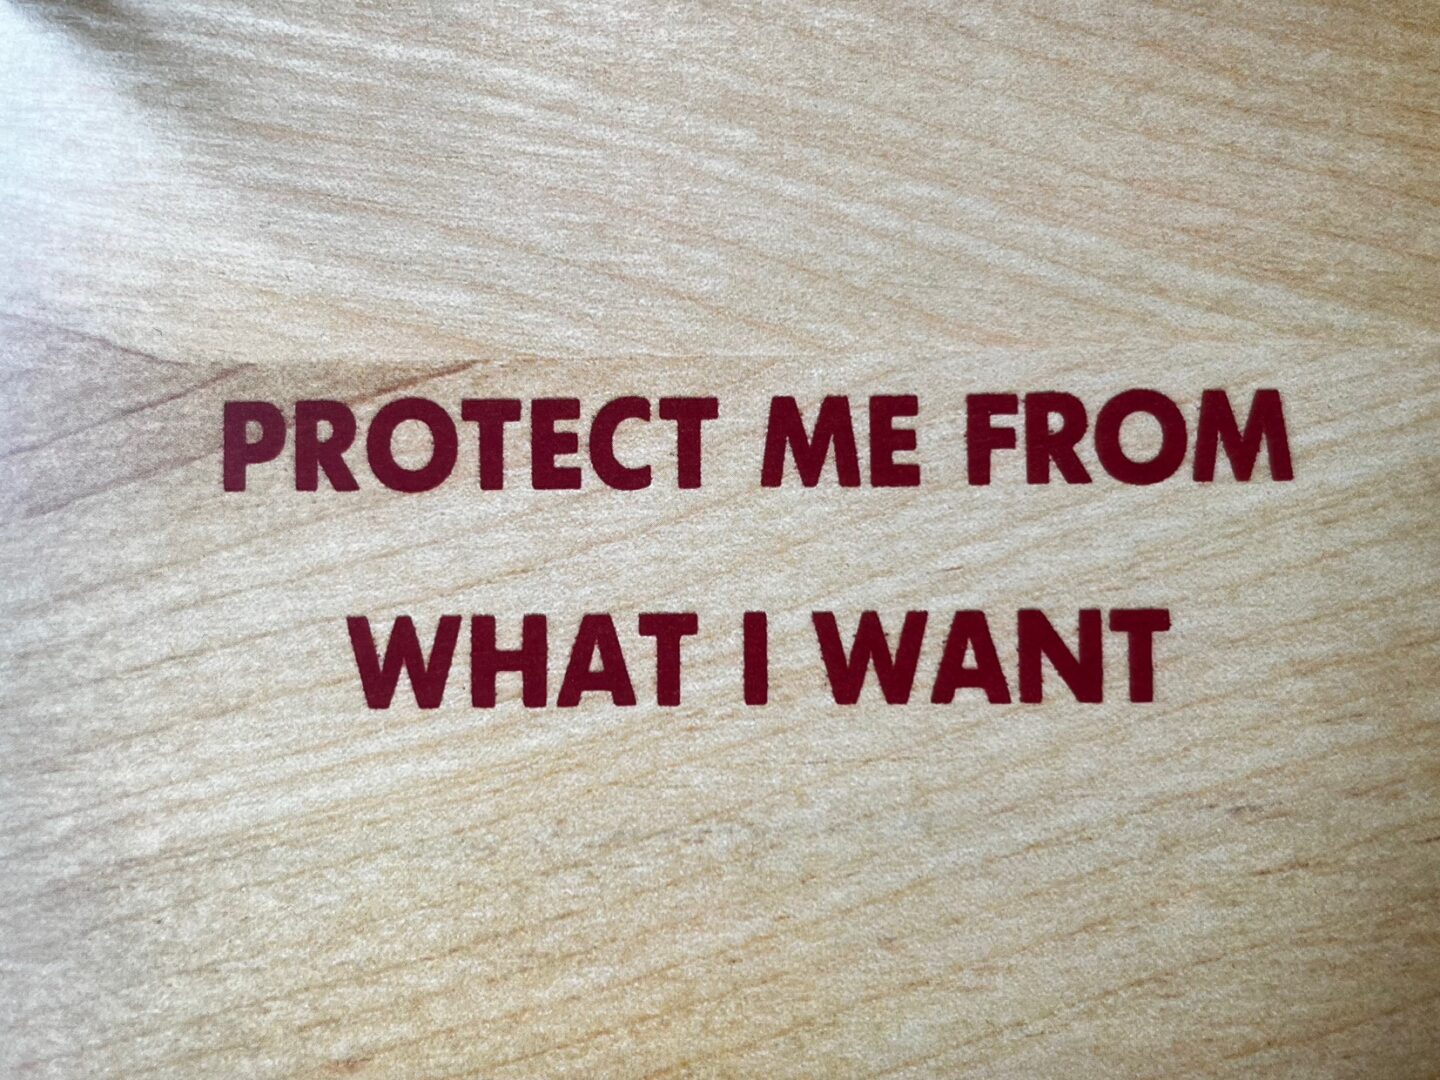 Sprachgewaltig und gesellschaftskritisch: Jenny Holzers Textkunst. protect me from what I want, beschütze mich vor dem was ich will. Schrift in rot auf holz